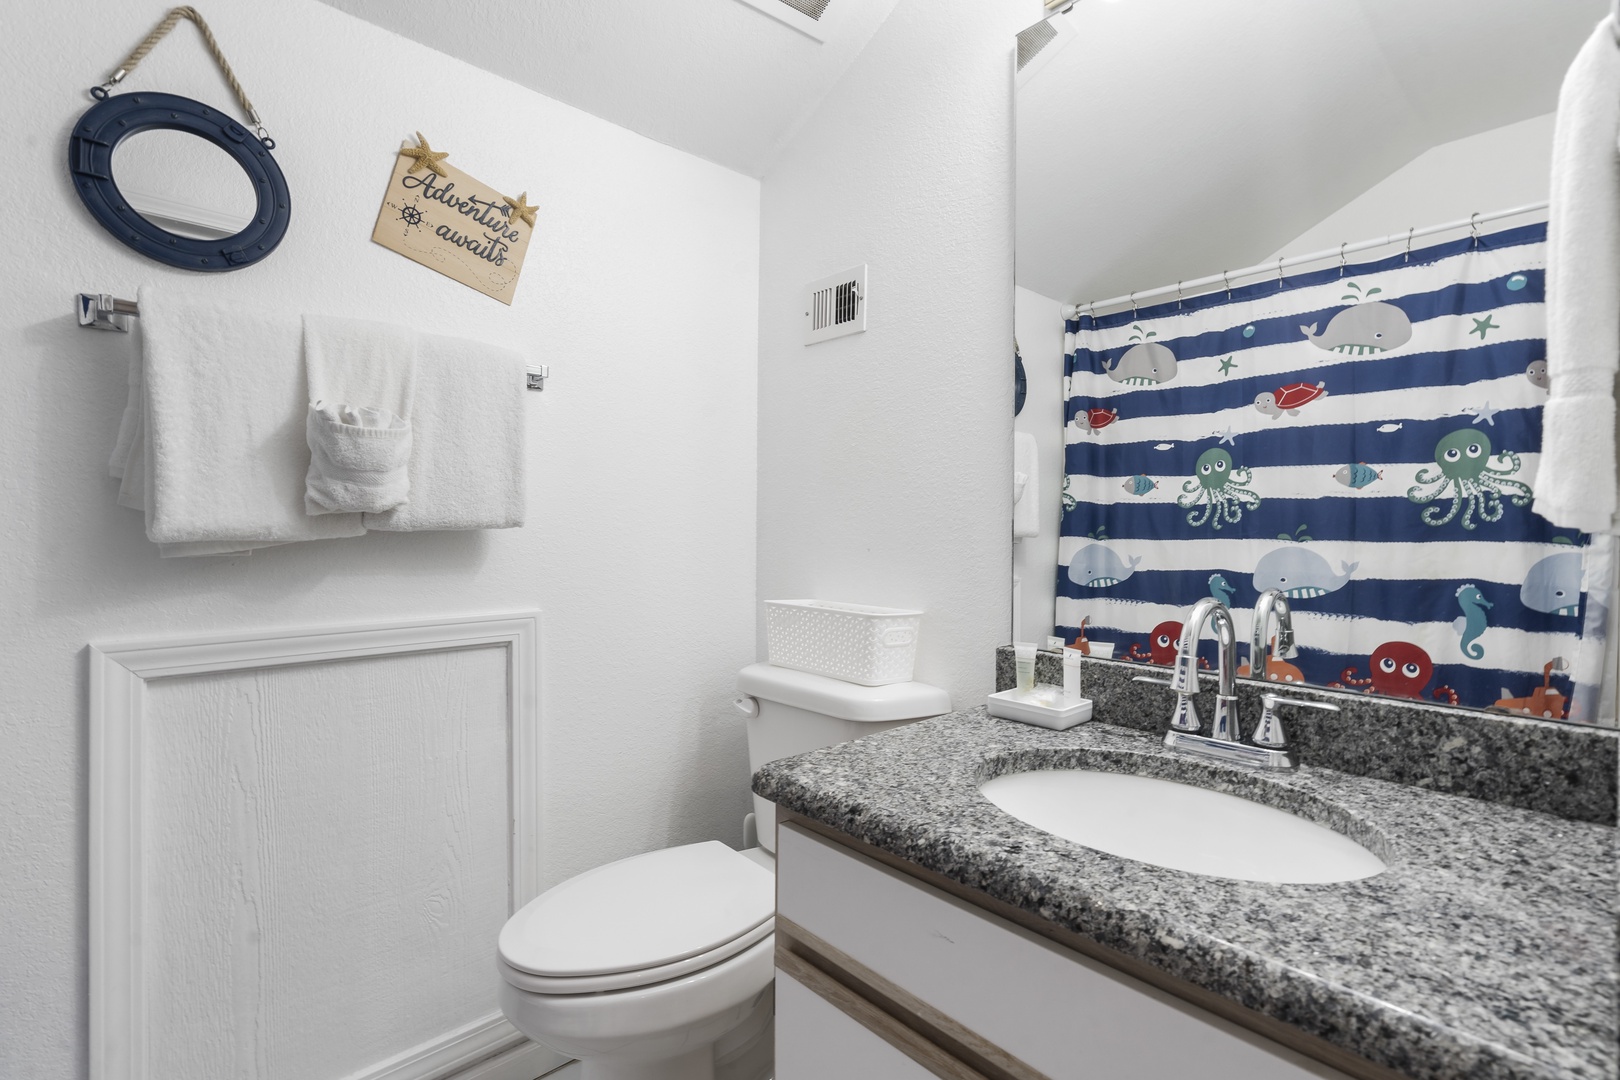 Second Floor Bathroom #3 Shower/Tub Combo En-Suite to Bedroom #3